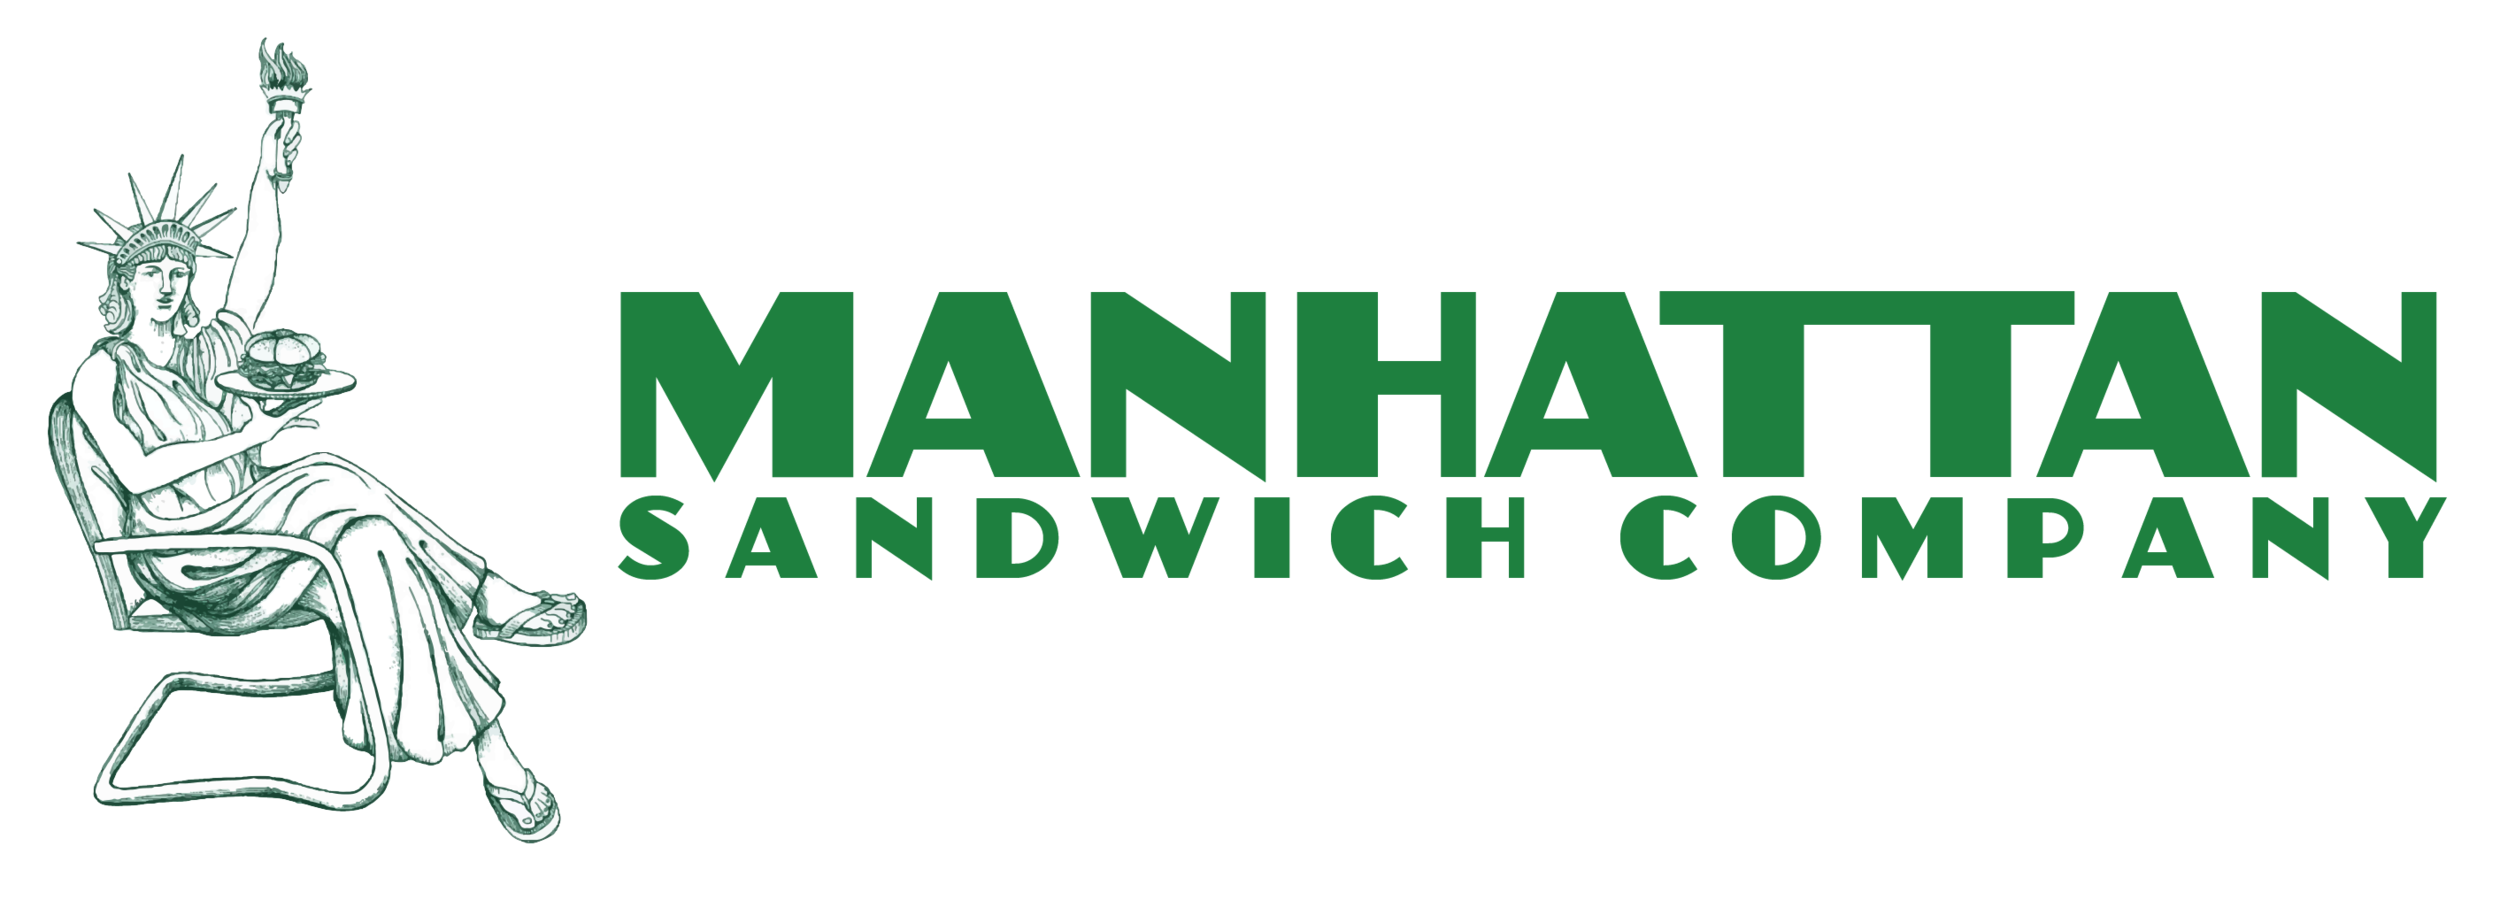 Manhattan Sandwich Co.